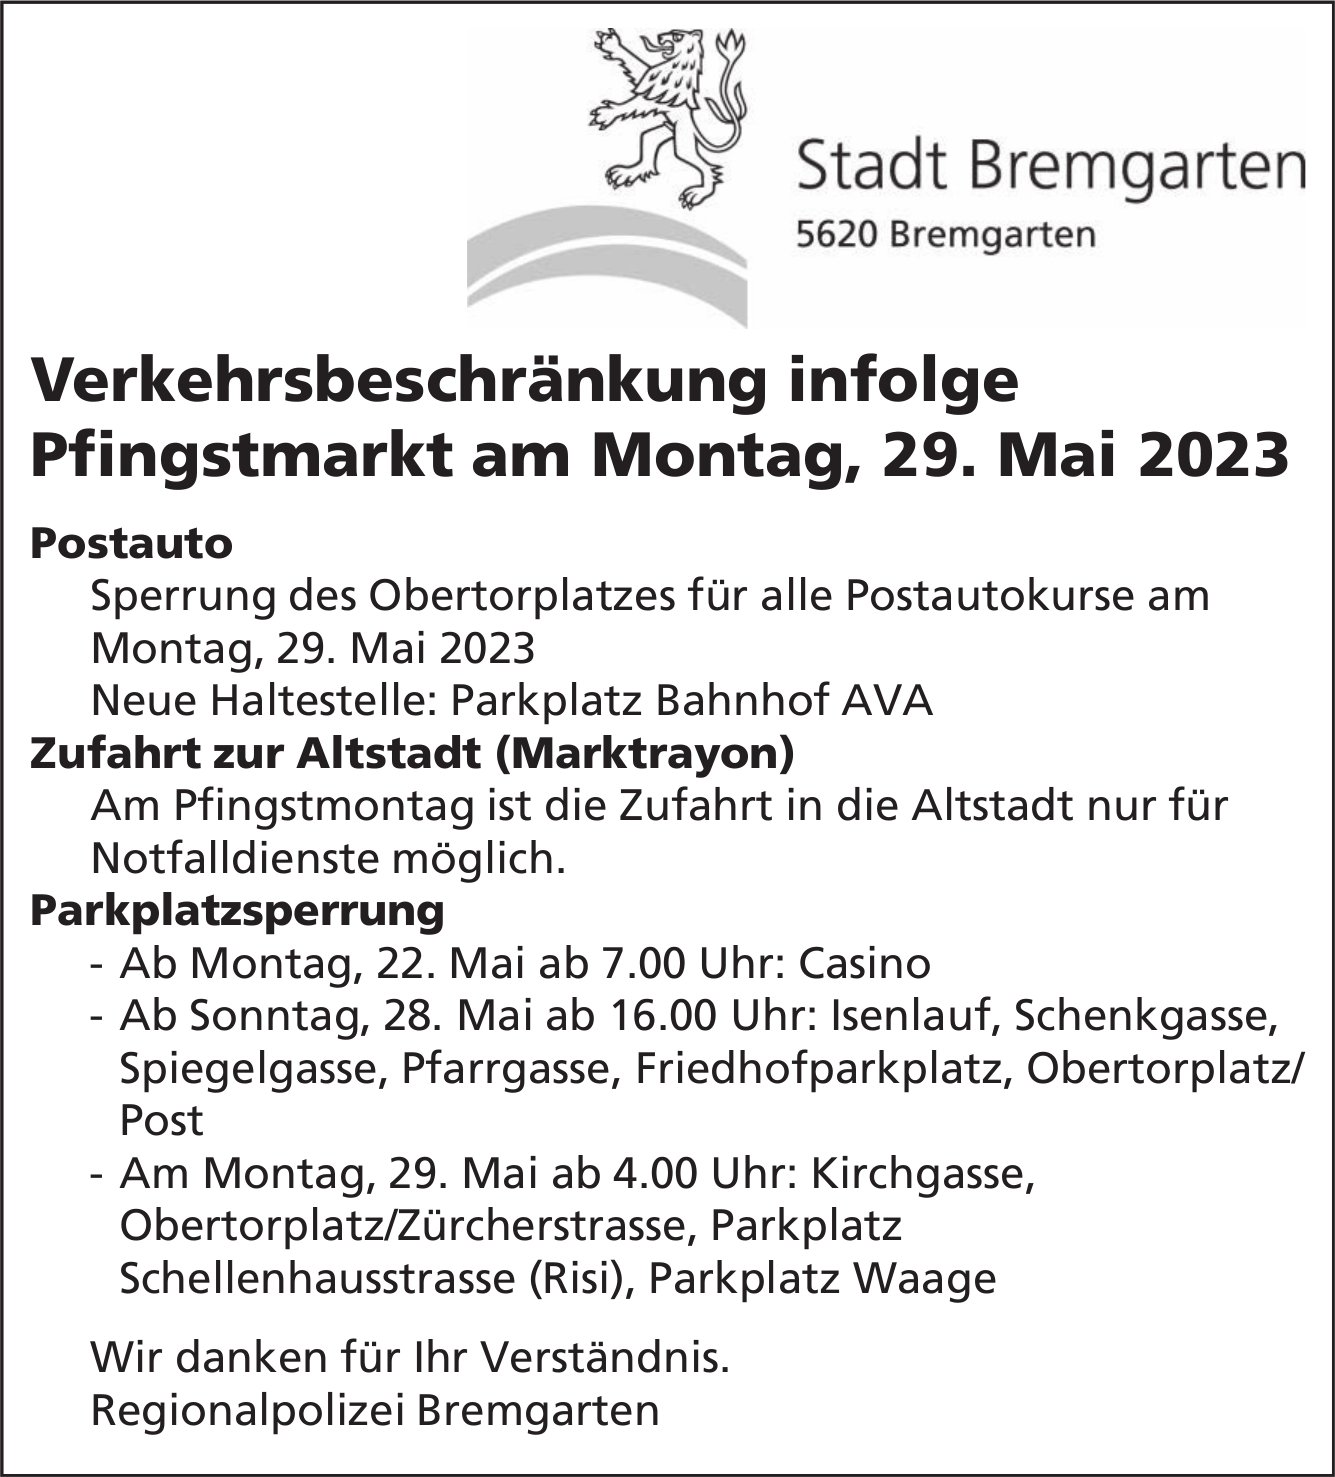 Bremgarten - Verkehrsbeschränkung infolge Pfingstmarkt, 29. Mai